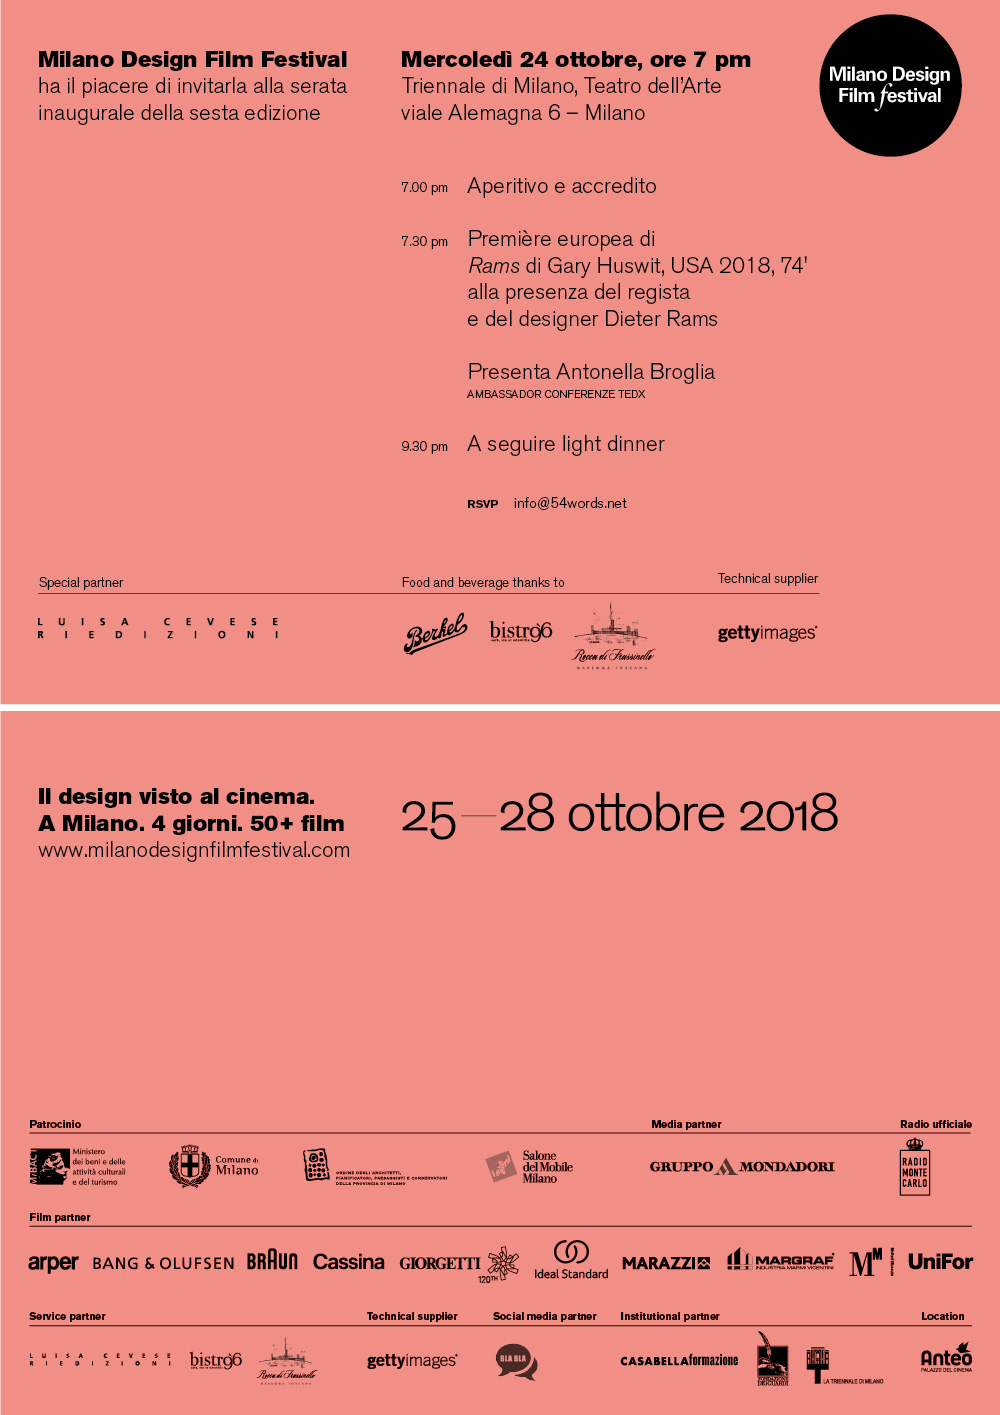 Blabla.agency è social media partner del Milano Design Film Festival 2018